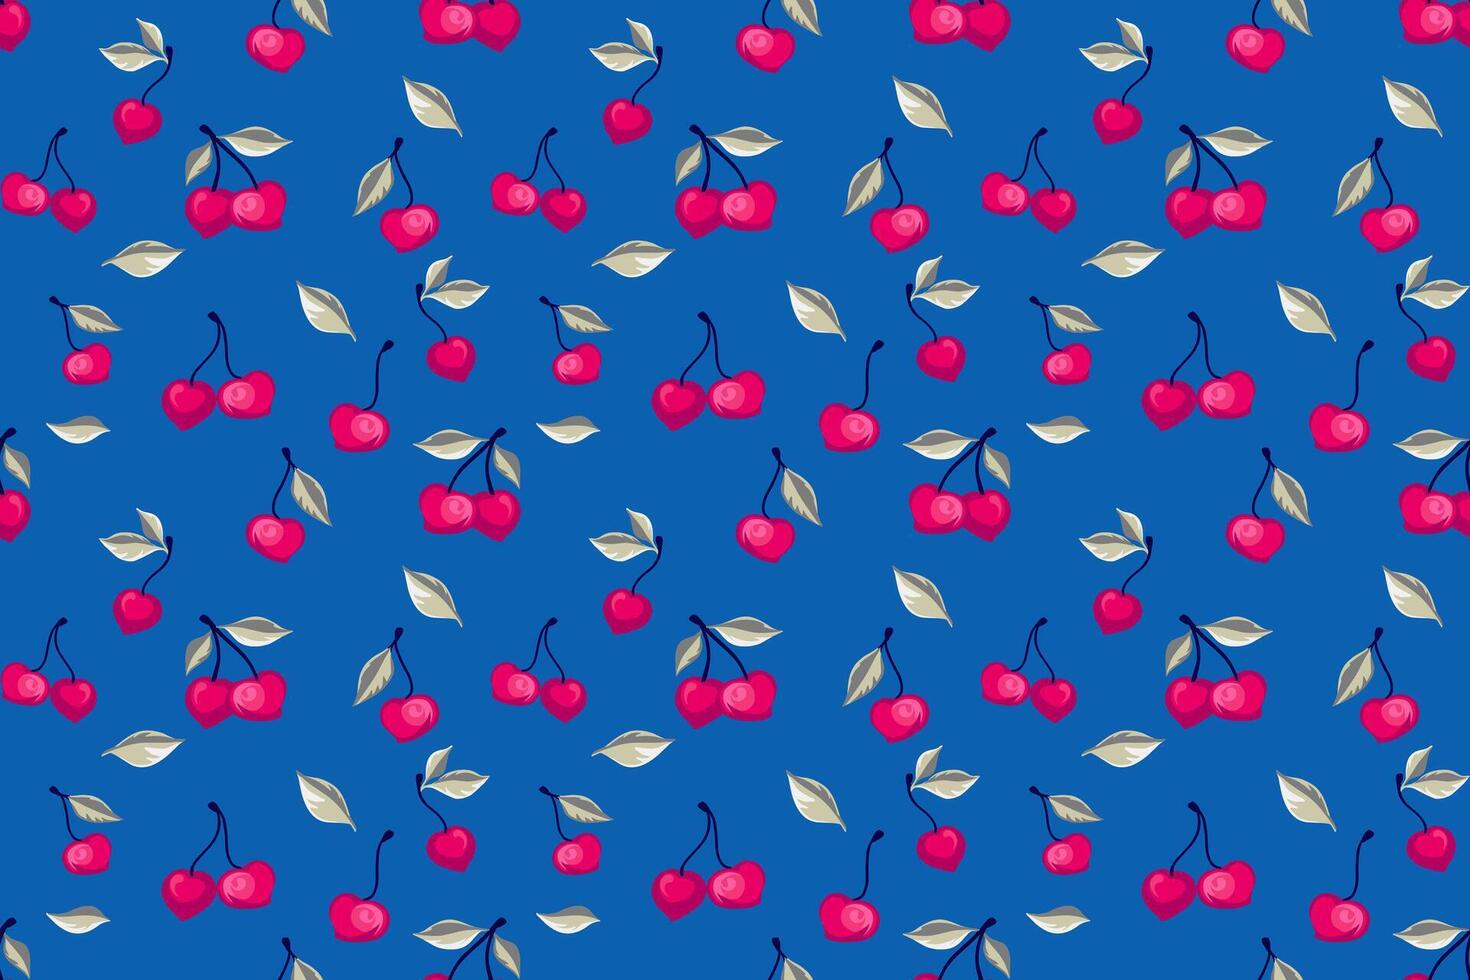 abstrakt stilisiert Kirsche nahtlos Muster auf ein Blau Hintergrund. Sommer- rot Beeren, Blätter, Hintergrund Drucken. Vektor Hand gezeichnet Früchte Illustration. Collage zum Design, Drucken, gemustert